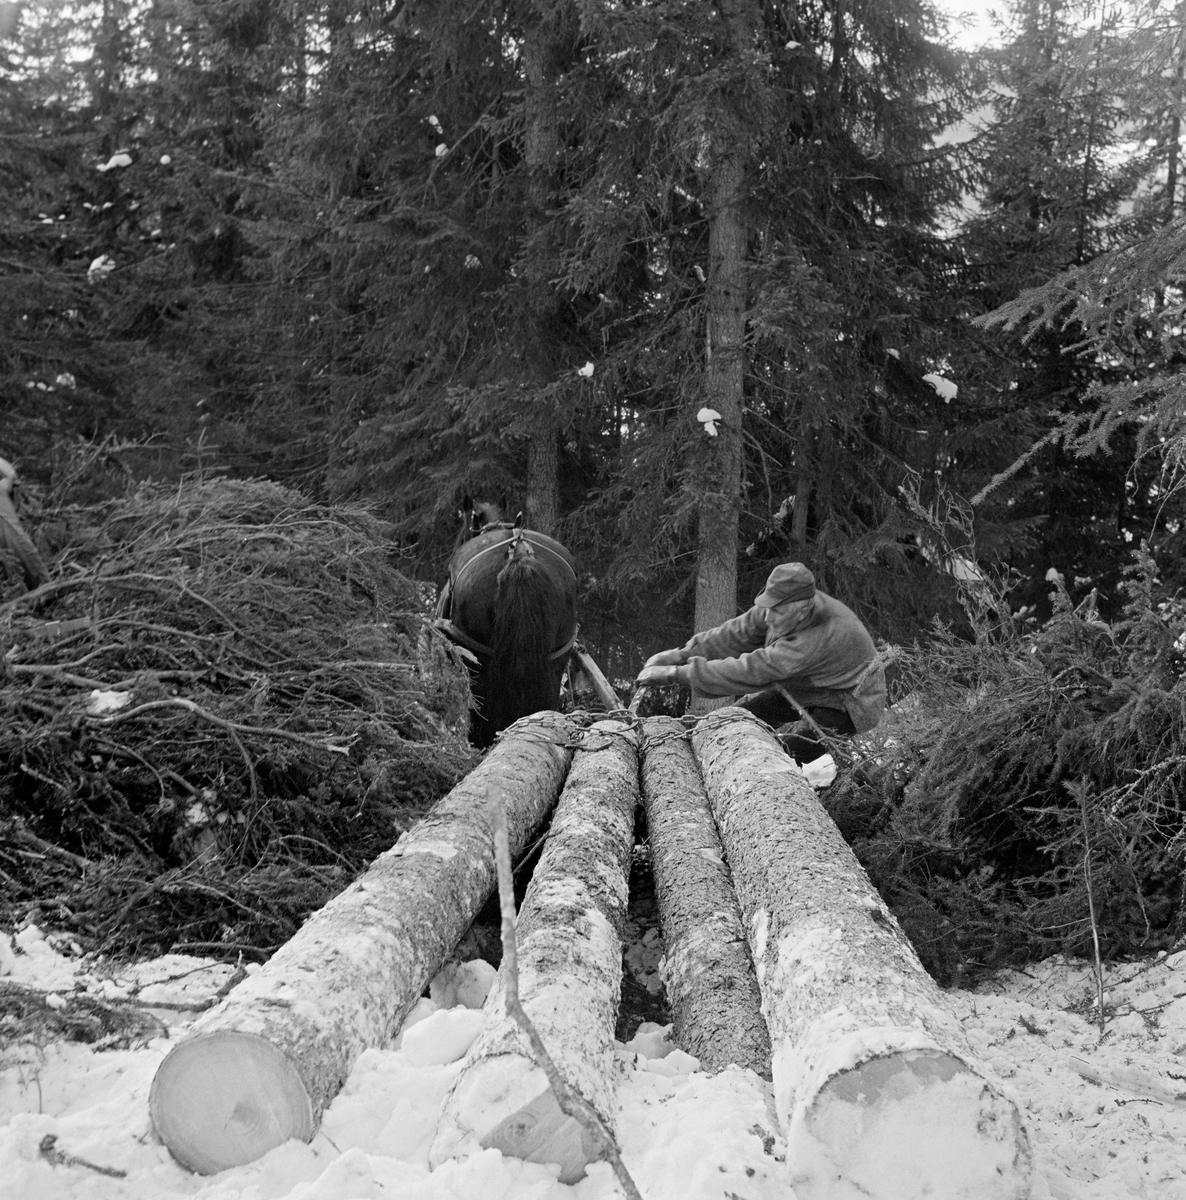 Tømmerkjører Kåre Bratteggen (1910-1999), fotografert under lunningsarbeid i Lundberget i Trysil vinteren 1977.  Akkurat da dette fotografiet ble tatt var Bratteggen i ferd med å strammen bendingsbjønnen, som skulle bidra til at de fremre delene av stokkene satt godt fastspent til «bukken» som ble brukt som lunningsredskap her.  En ser vi ikke stort av på grunn de fire ubarkete tømmerstokkene som skulle lunnes og alt granbaret som lå like inntil.  Bratteggen var kledd i en busserull av heimevevd ullstoff og en bomullhatt med skygge over panna.  Tømmerhesten ser vi bakfra på dette fotografiet, som er tatt i forholdsvis tett granskog. Skogbruk.